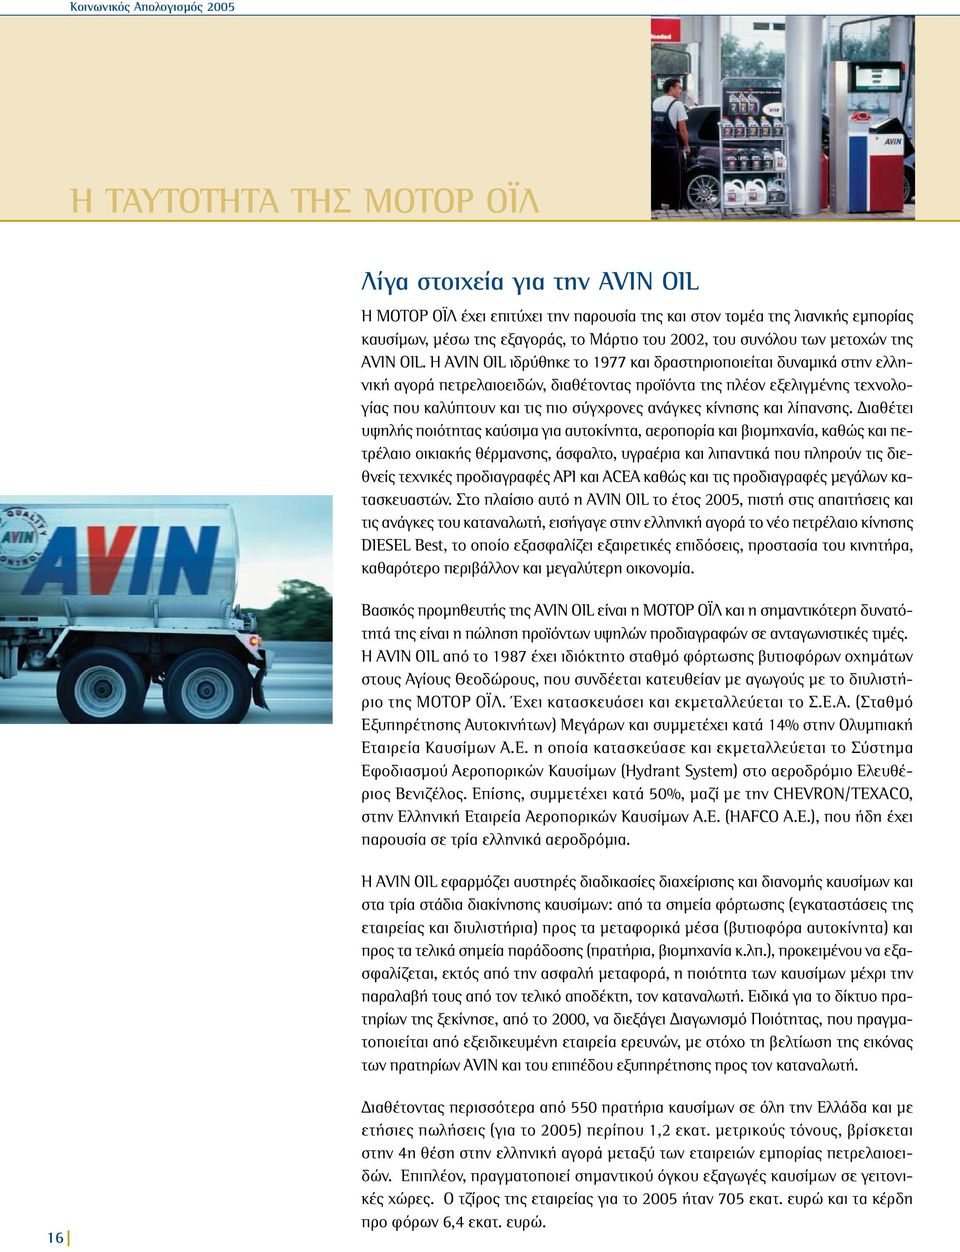 Η AVIN OIL ιδρύθηκε το 1977 και δραστηριοποιείται δυναµικά στην ελληνική αγορά πετρελαιοειδών, διαθέτοντας προϊόντα της πλέον εξελιγµένης τεχνολογίας που καλύπτουν και τις πιο σύγχρονες ανάγκες